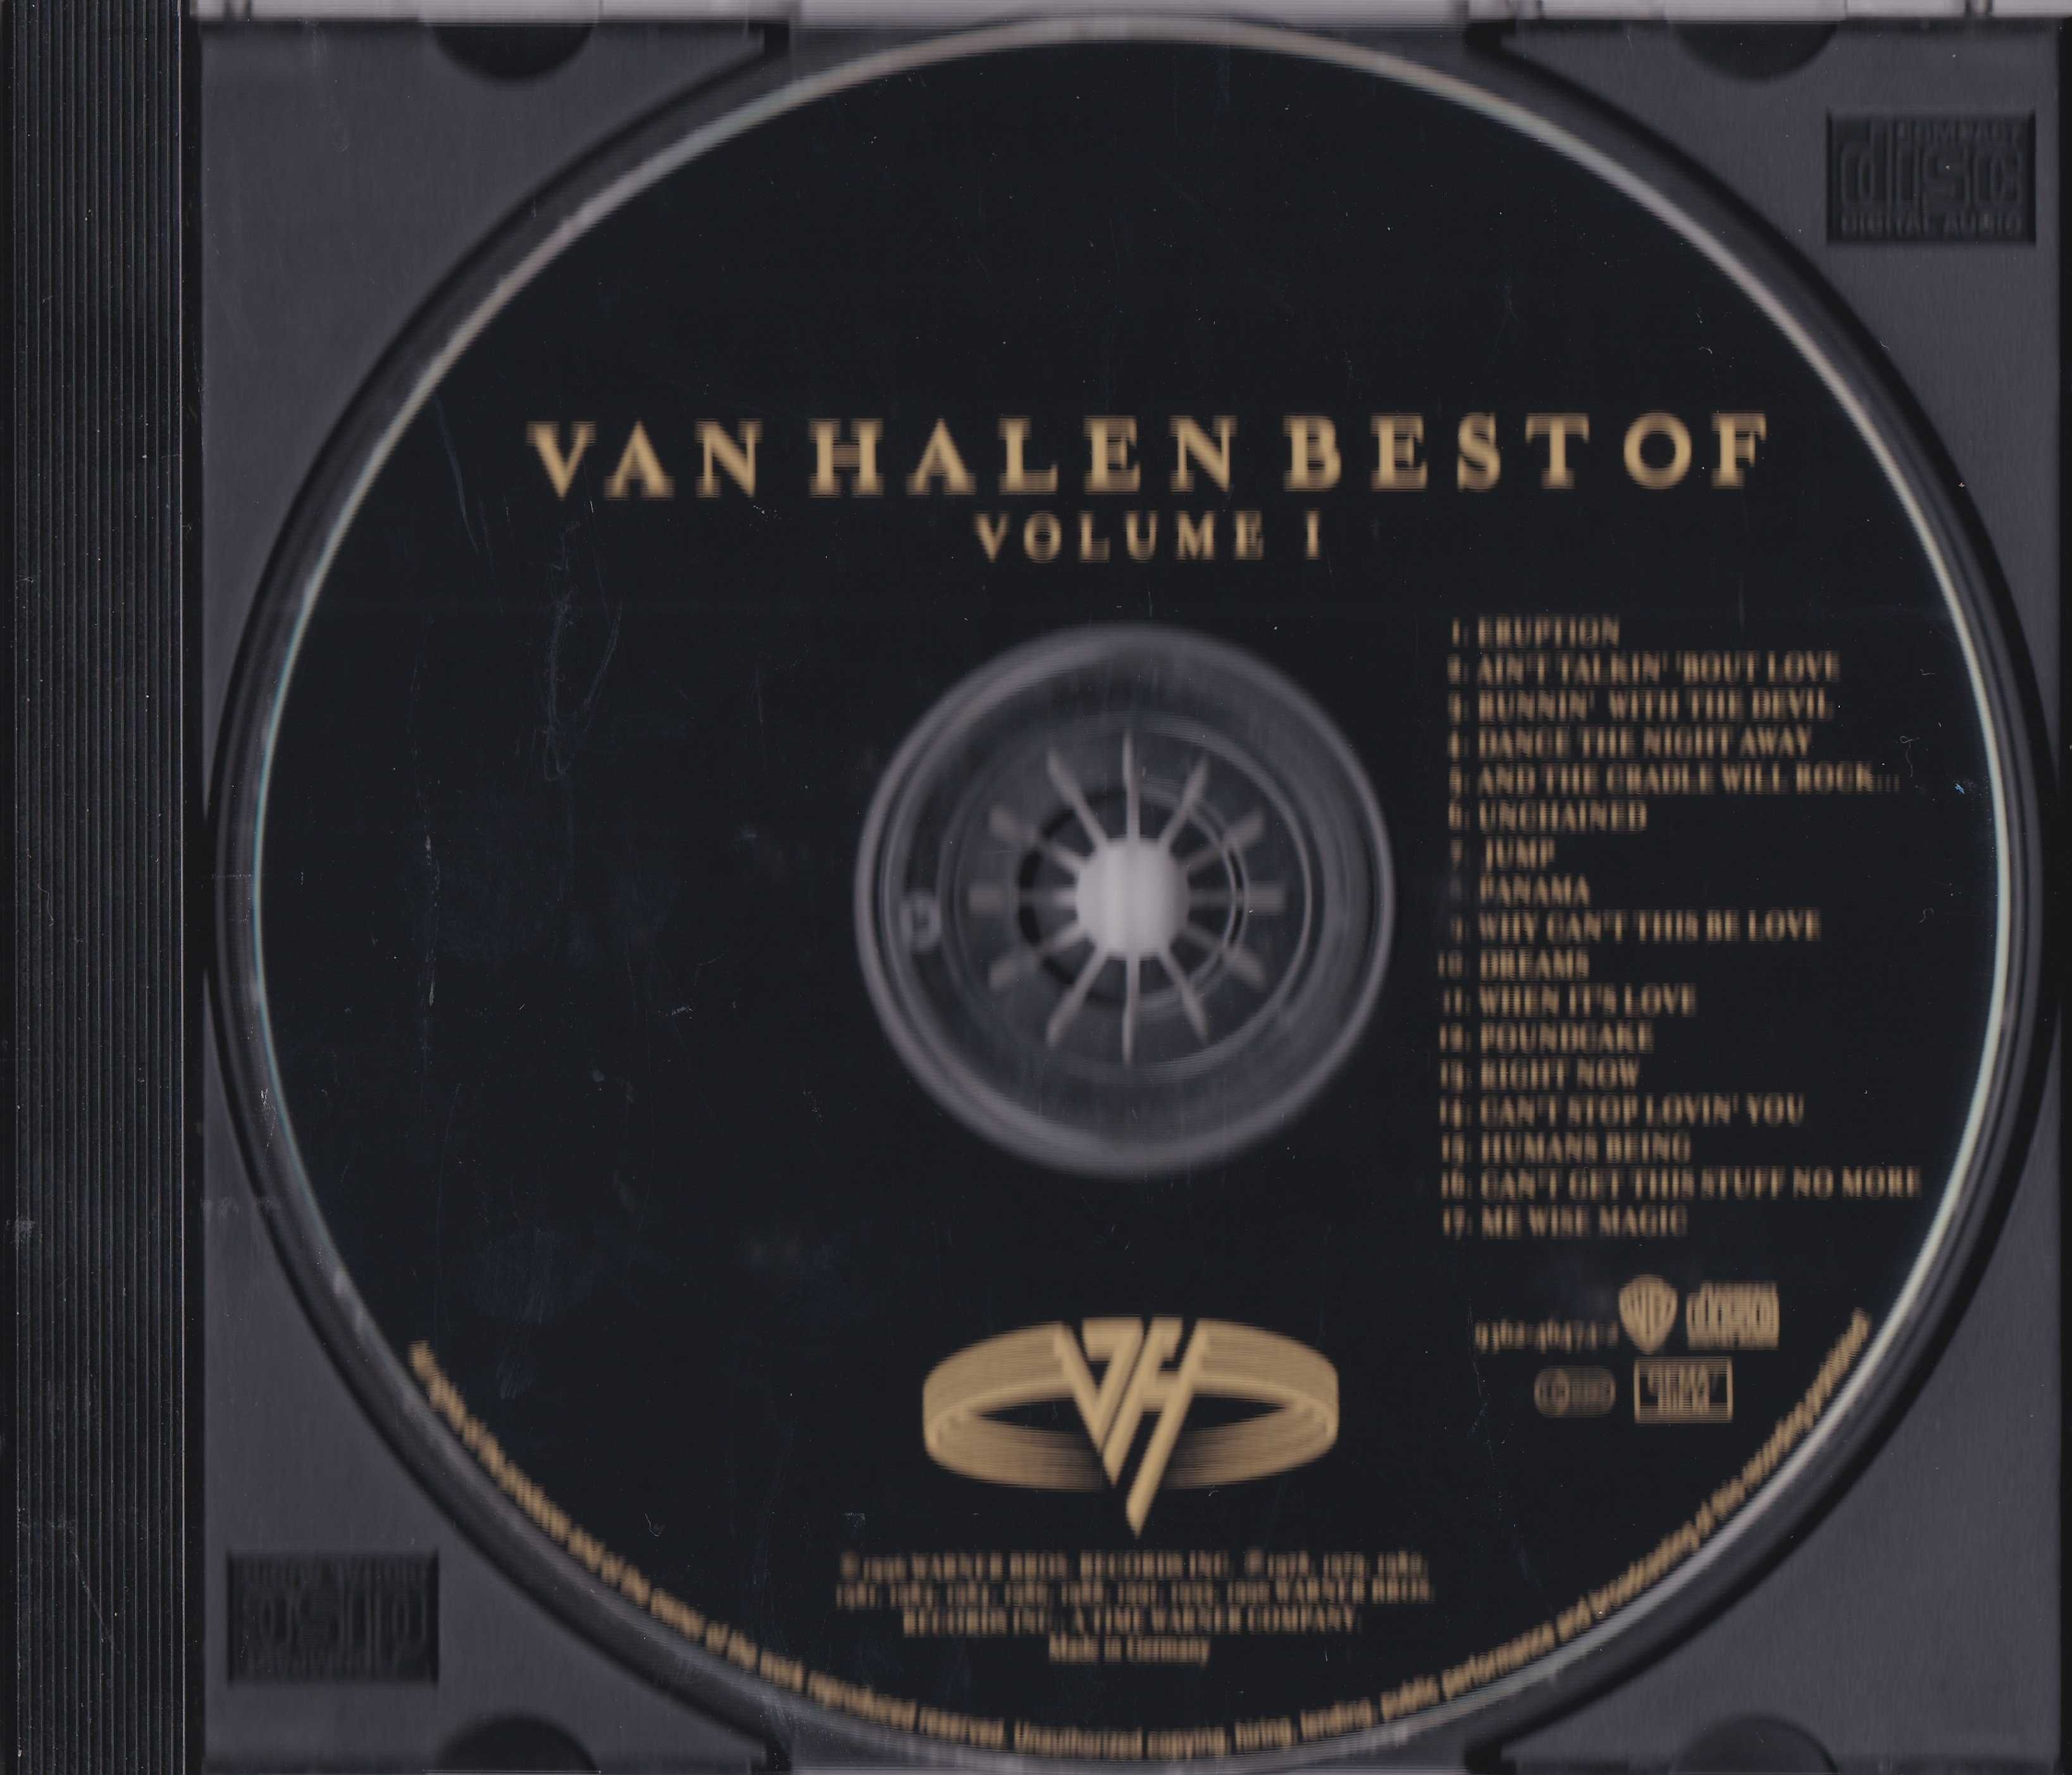 Van Halen – Best Of Volume I